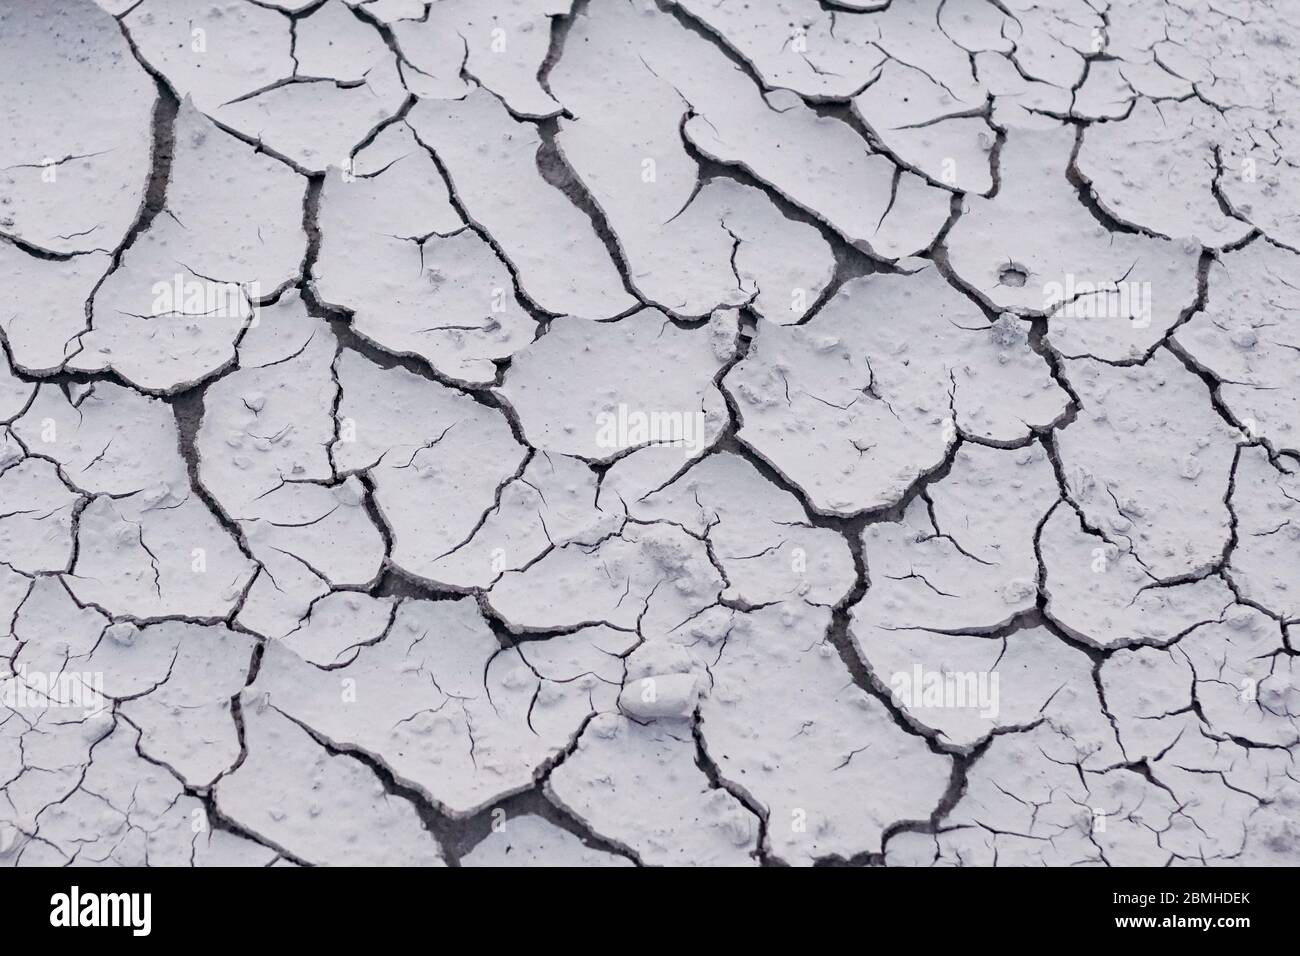 12.2005 sec dans la boue séchée, étang / stream causée par une sécheresse prolongée en raison de l'été, les températures extrêmes Banque D'Images